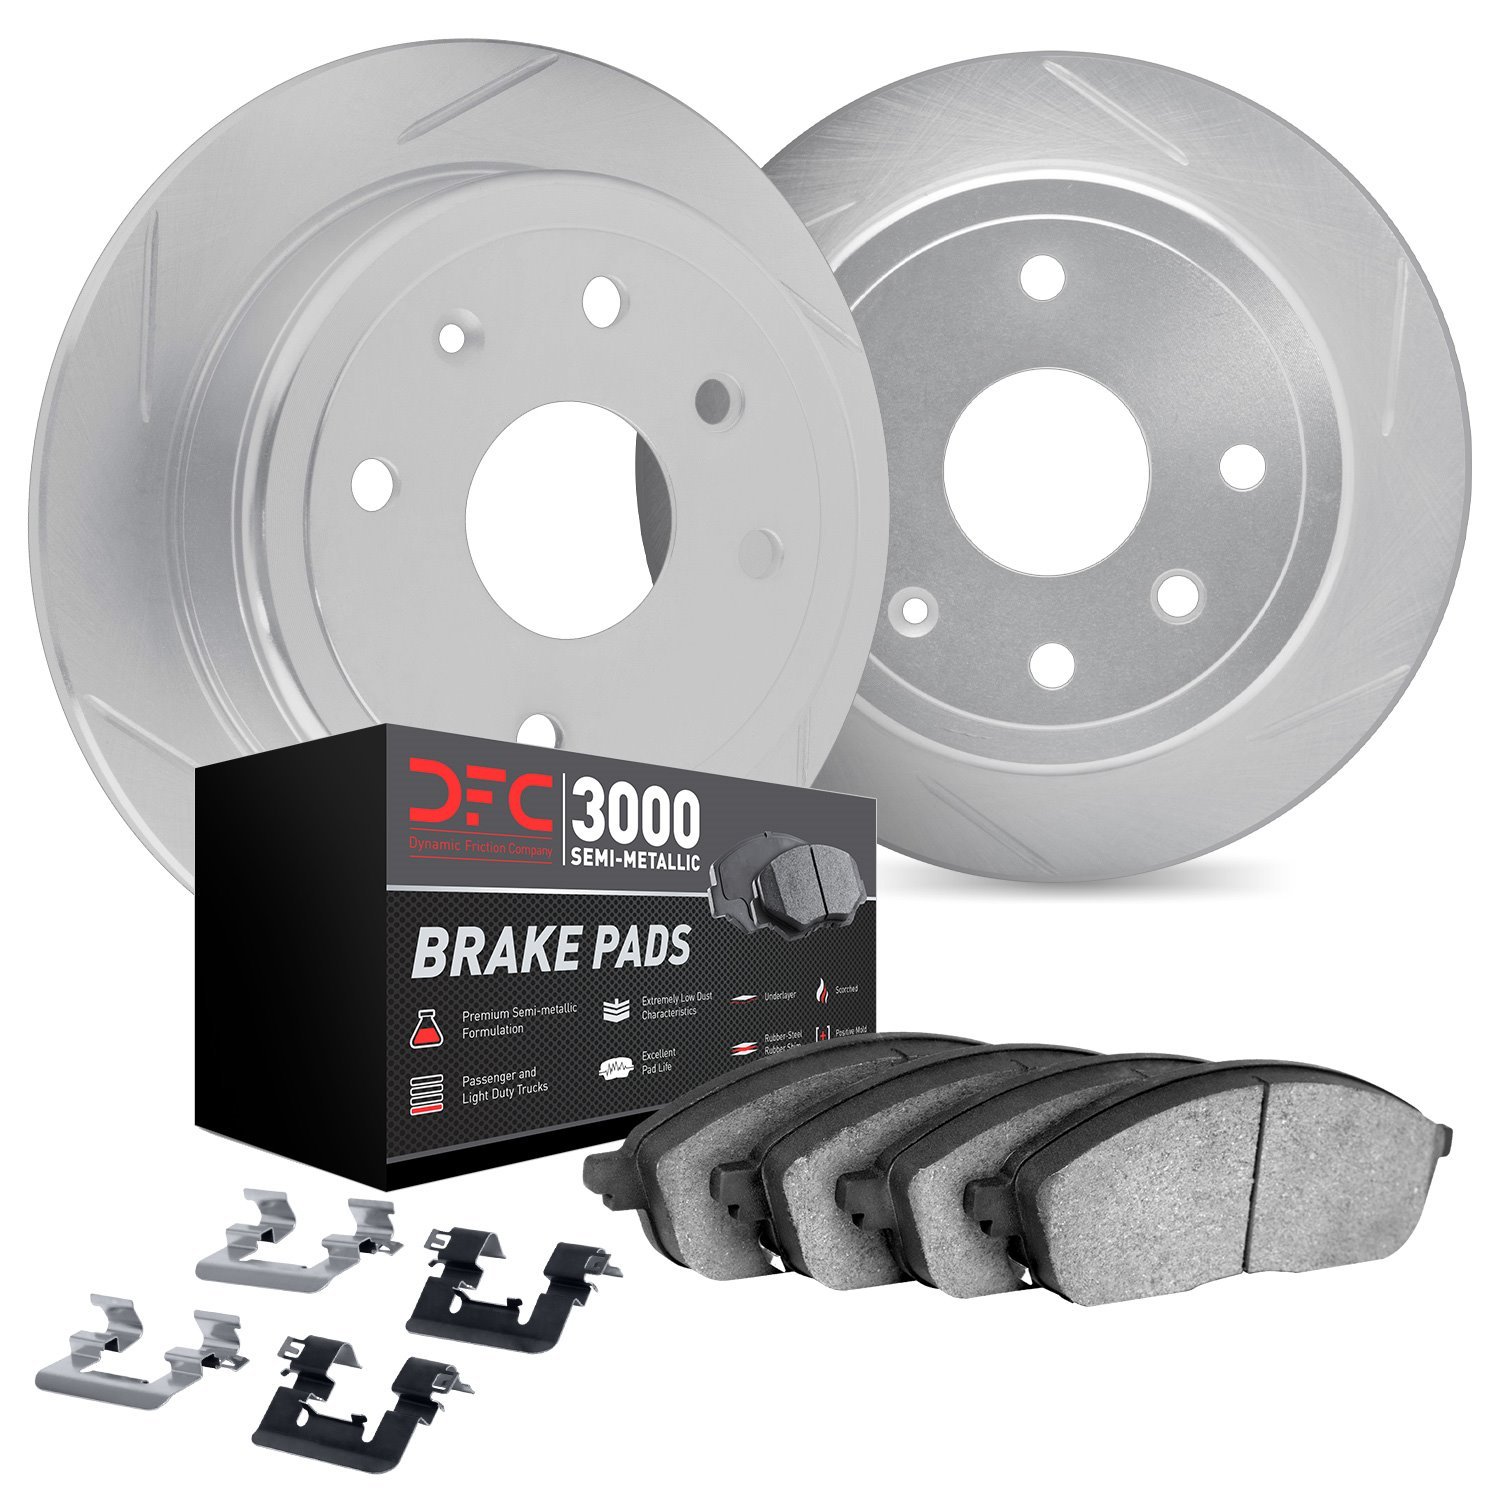 5112-76177 Slotted Brake Rotors with 3000-Series Semi-Metallic Brake Pads Kit & Hardware [Silver], 2006-2018 Lexus/Toyota/Scion,